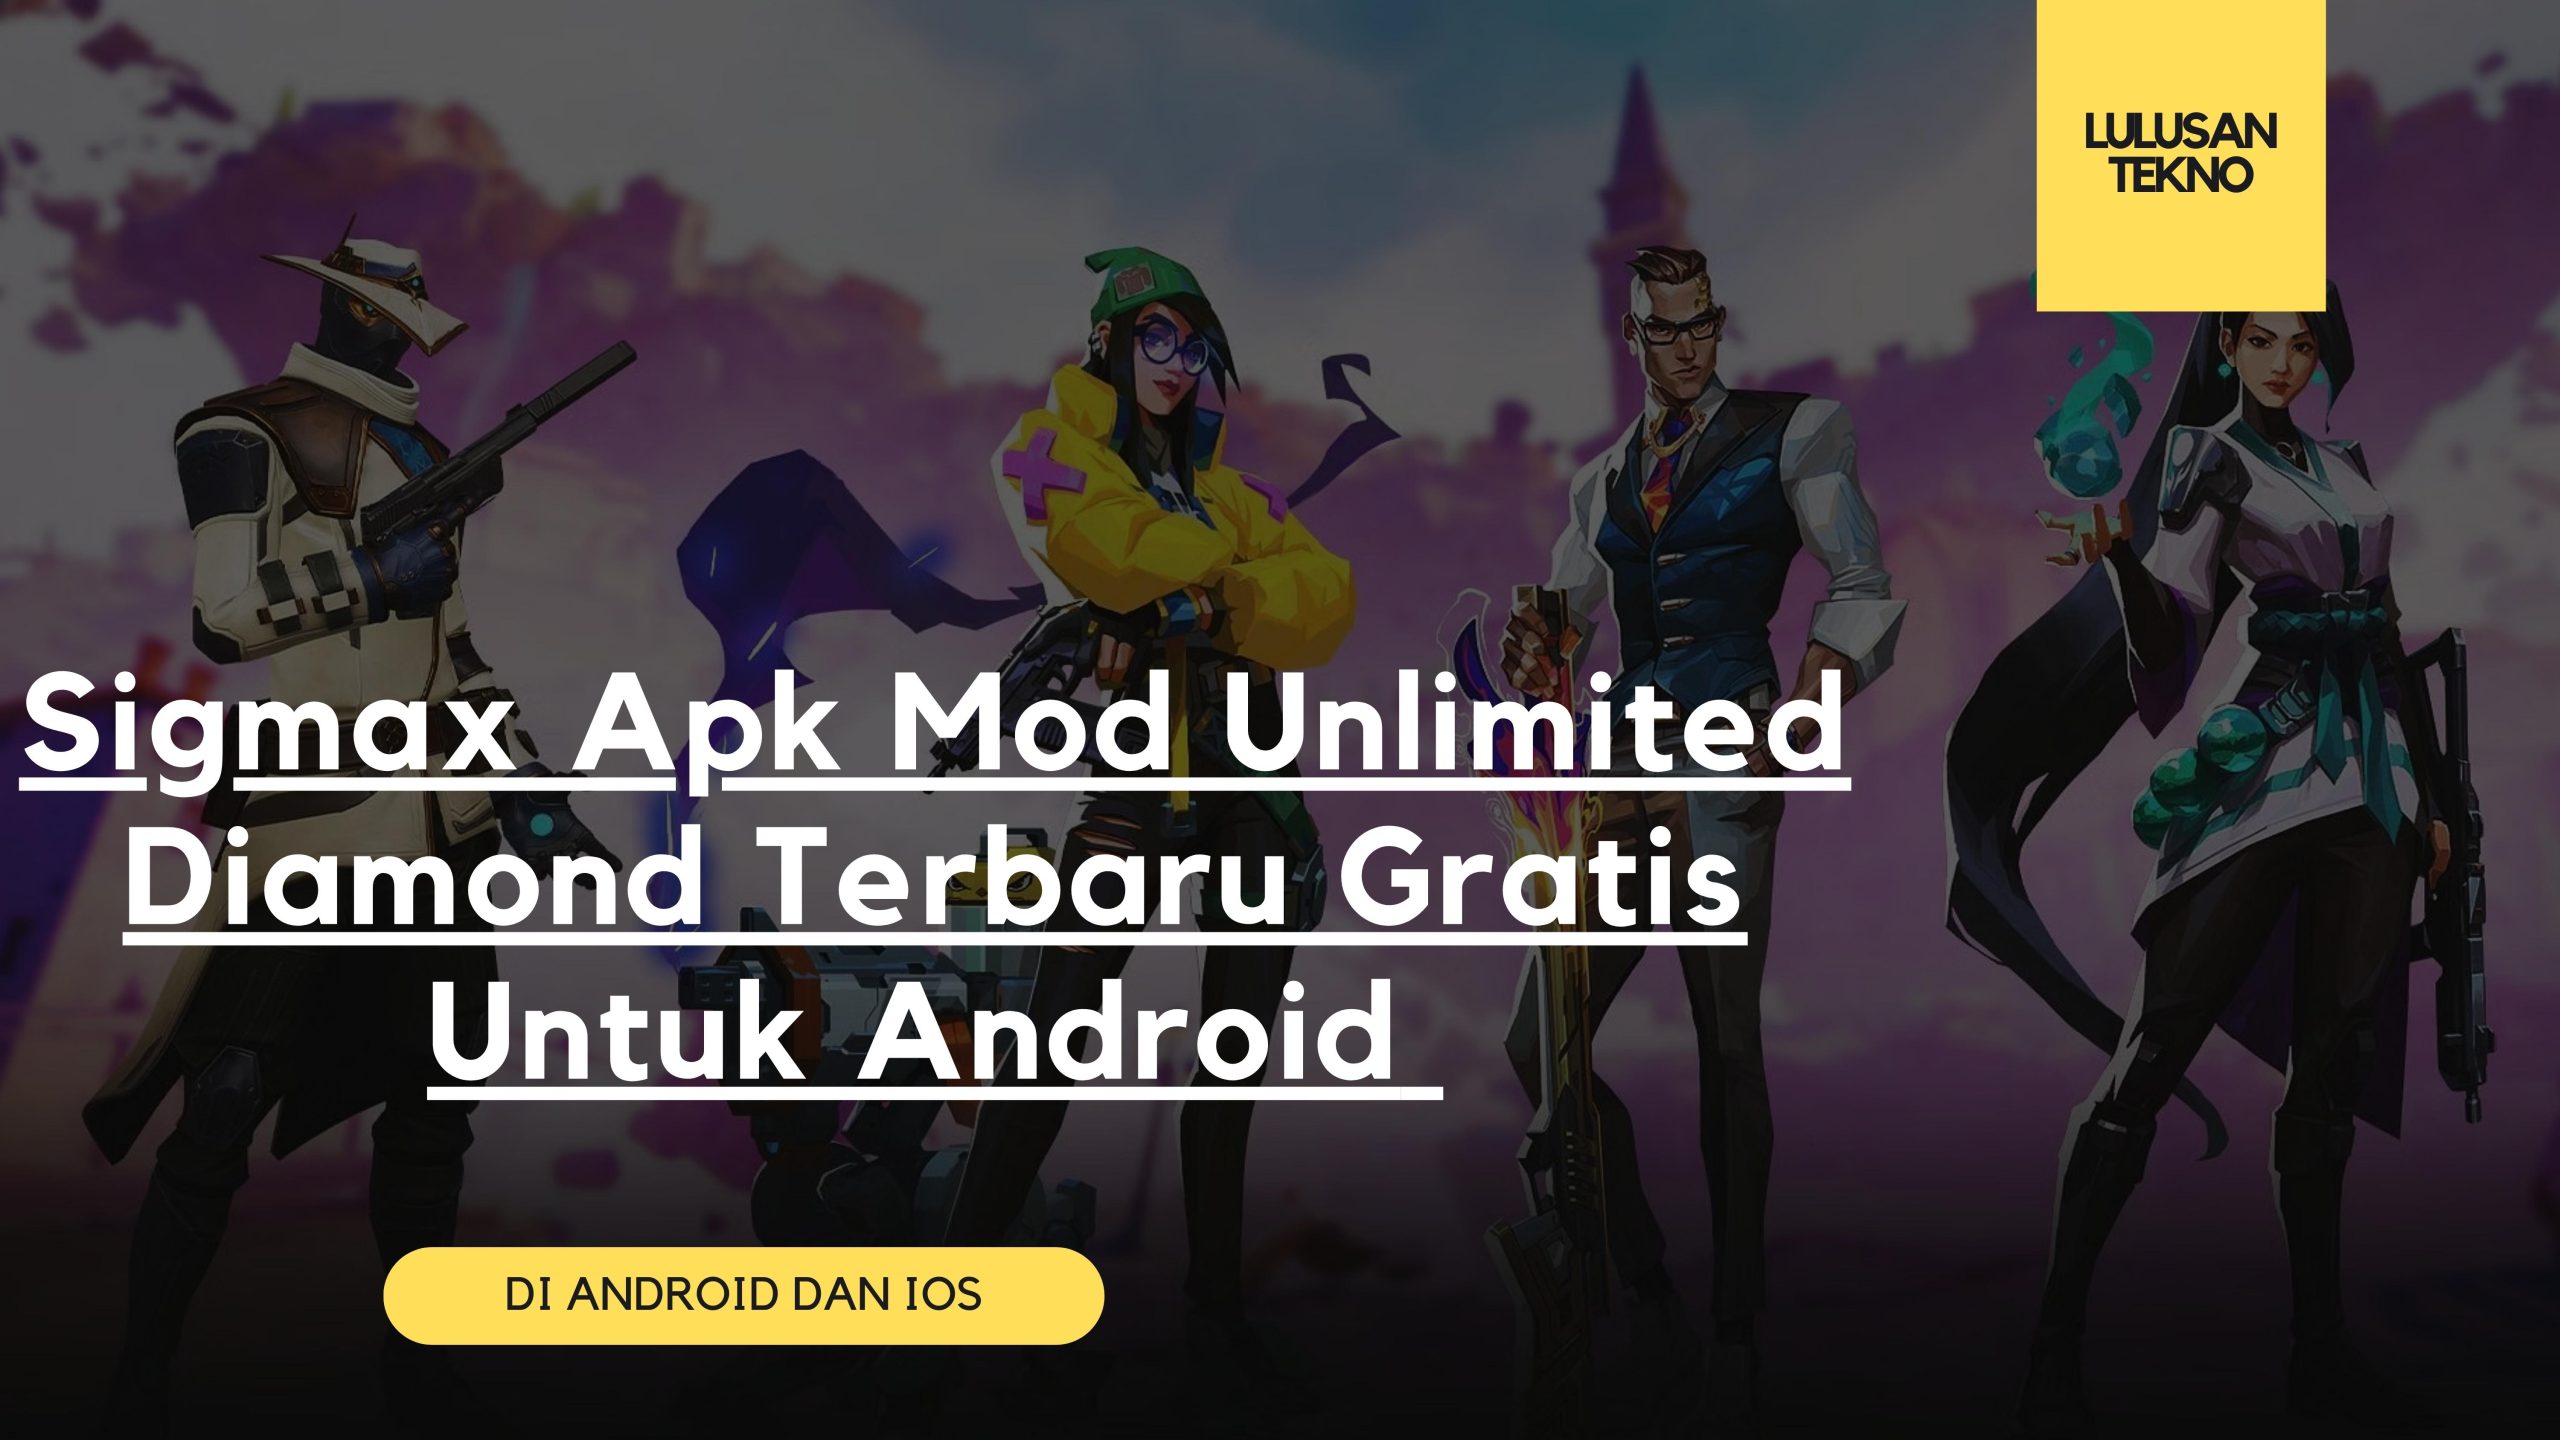 Sigmax Apk Mod Unlimited Diamond Terbaru Gratis Untuk Android